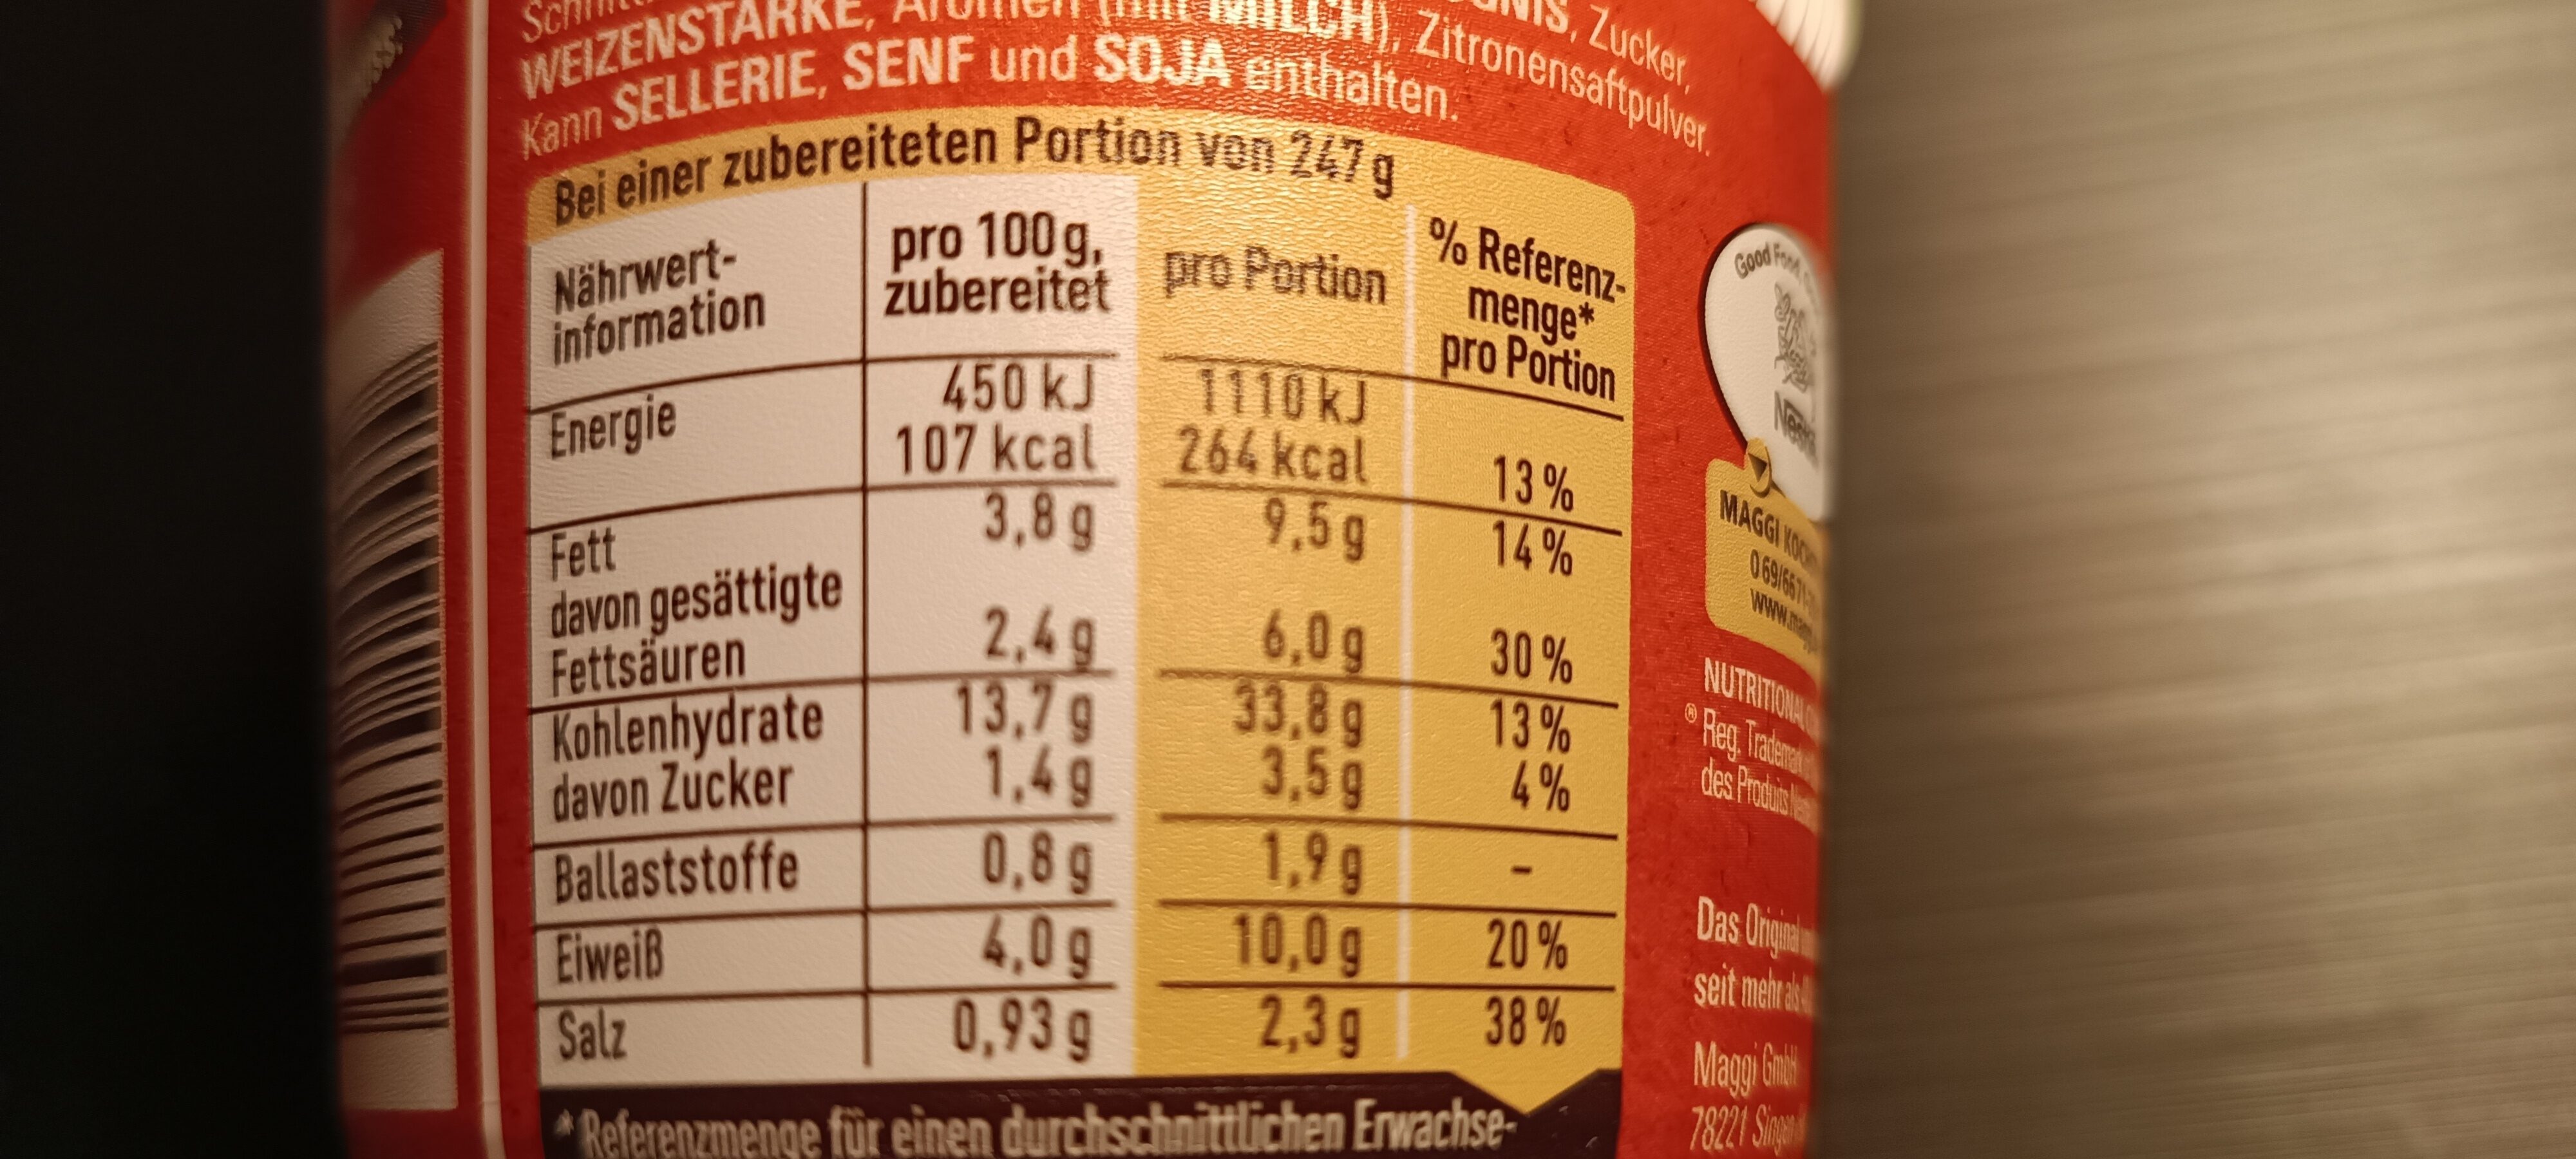 5 Minuten Spaghetti in Käse-Sahne-Sauce - Nutrition facts - de